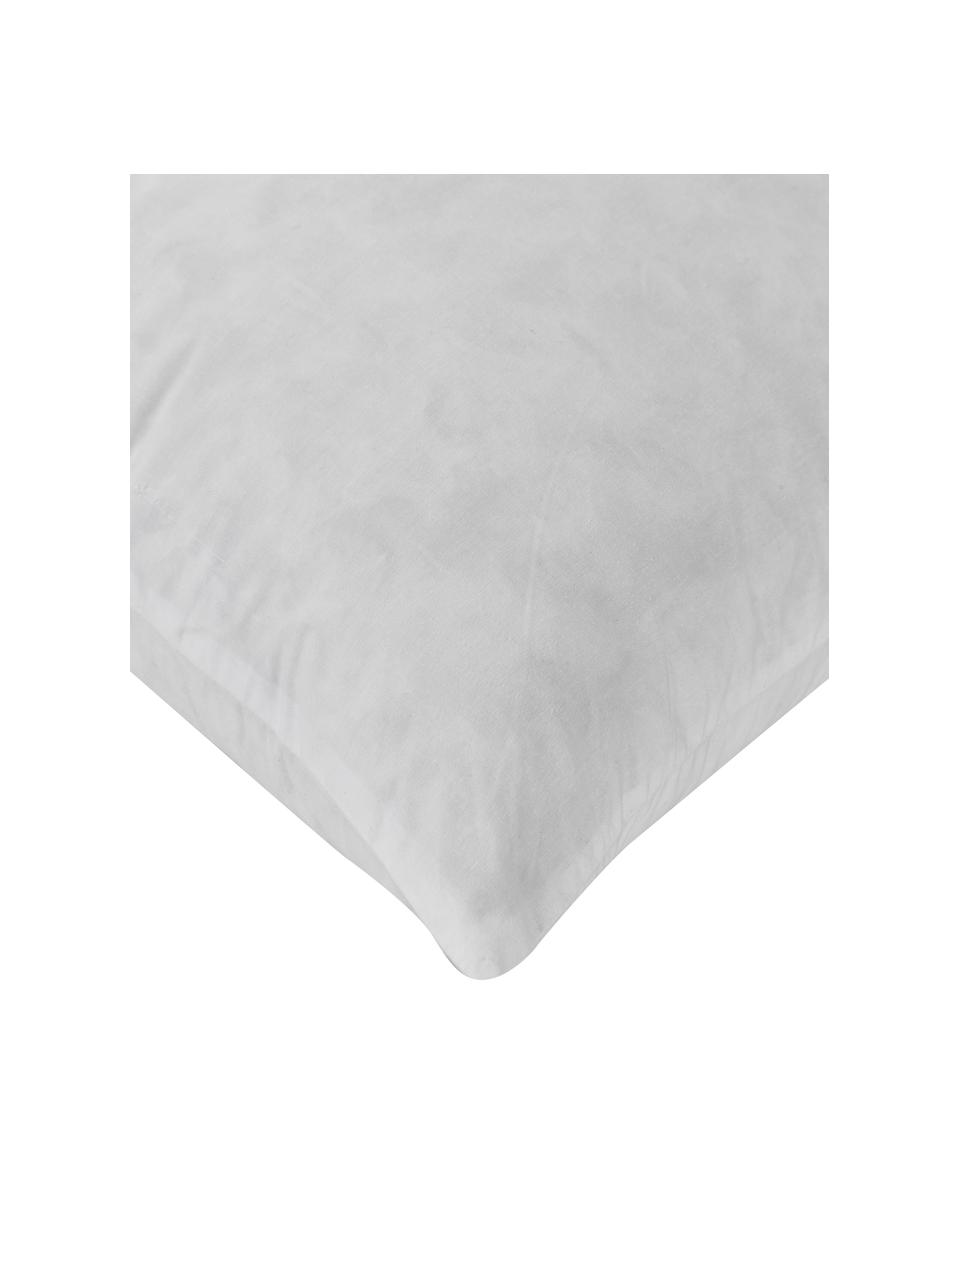 Dekokissen-Inlett Comfort, Feder-Füllung, verschiedene Größen, Bezug: 80 % Baumwolle, 20 % recy, Weiß, B 50 x L 50 cm